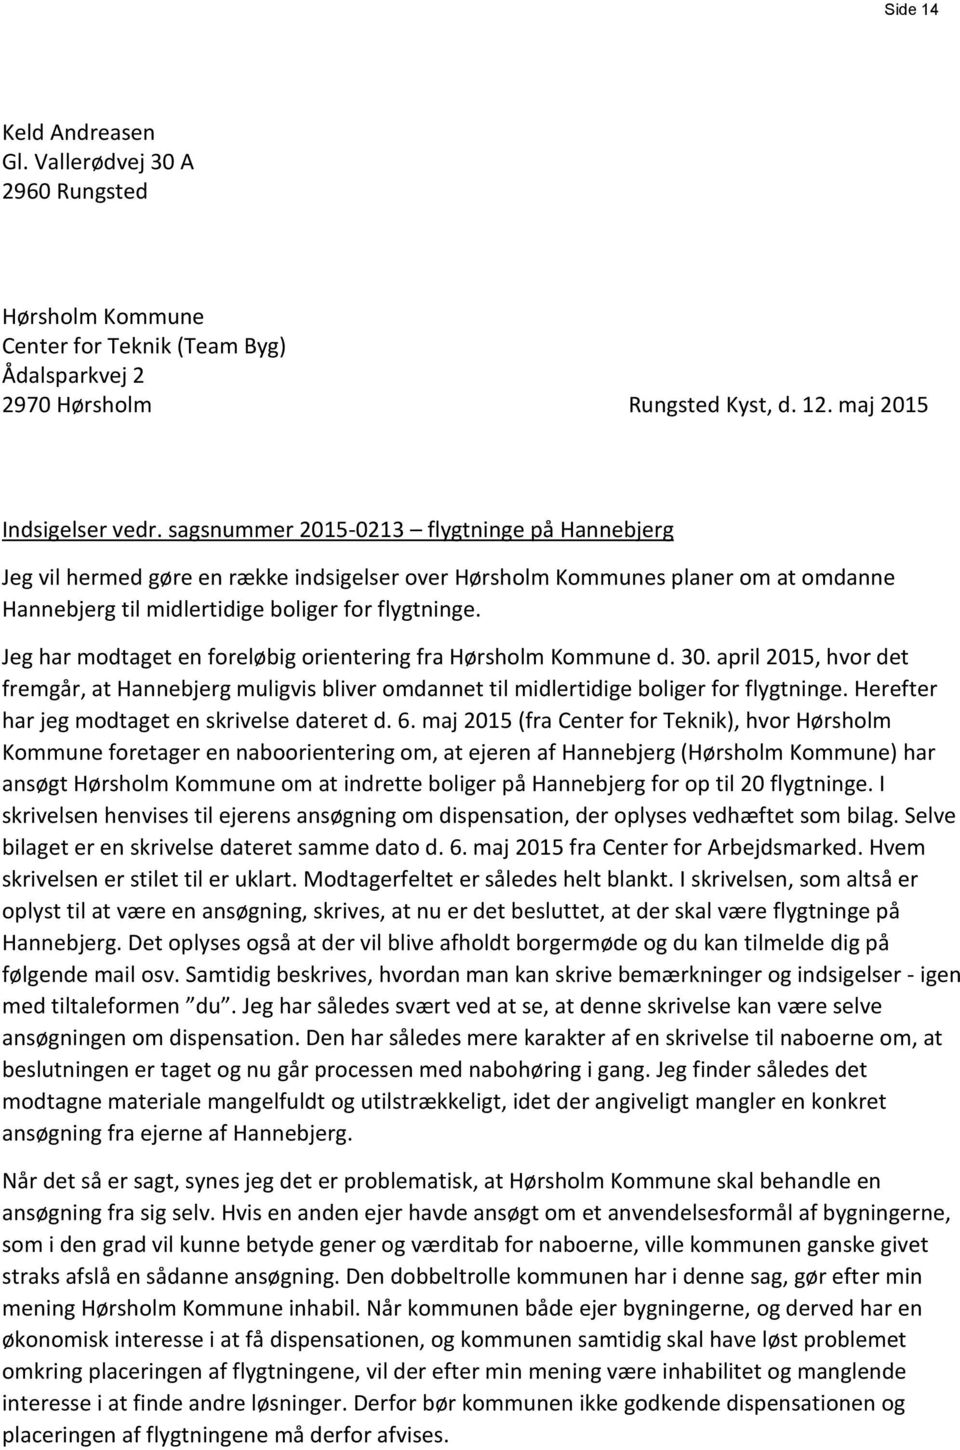 Jeg har modtaget en foreløbig orientering fra Hørsholm Kommune d. 30. april 2015, hvor det fremgår, at Hannebjerg muligvis bliver omdannet til midlertidige boliger for flygtninge.